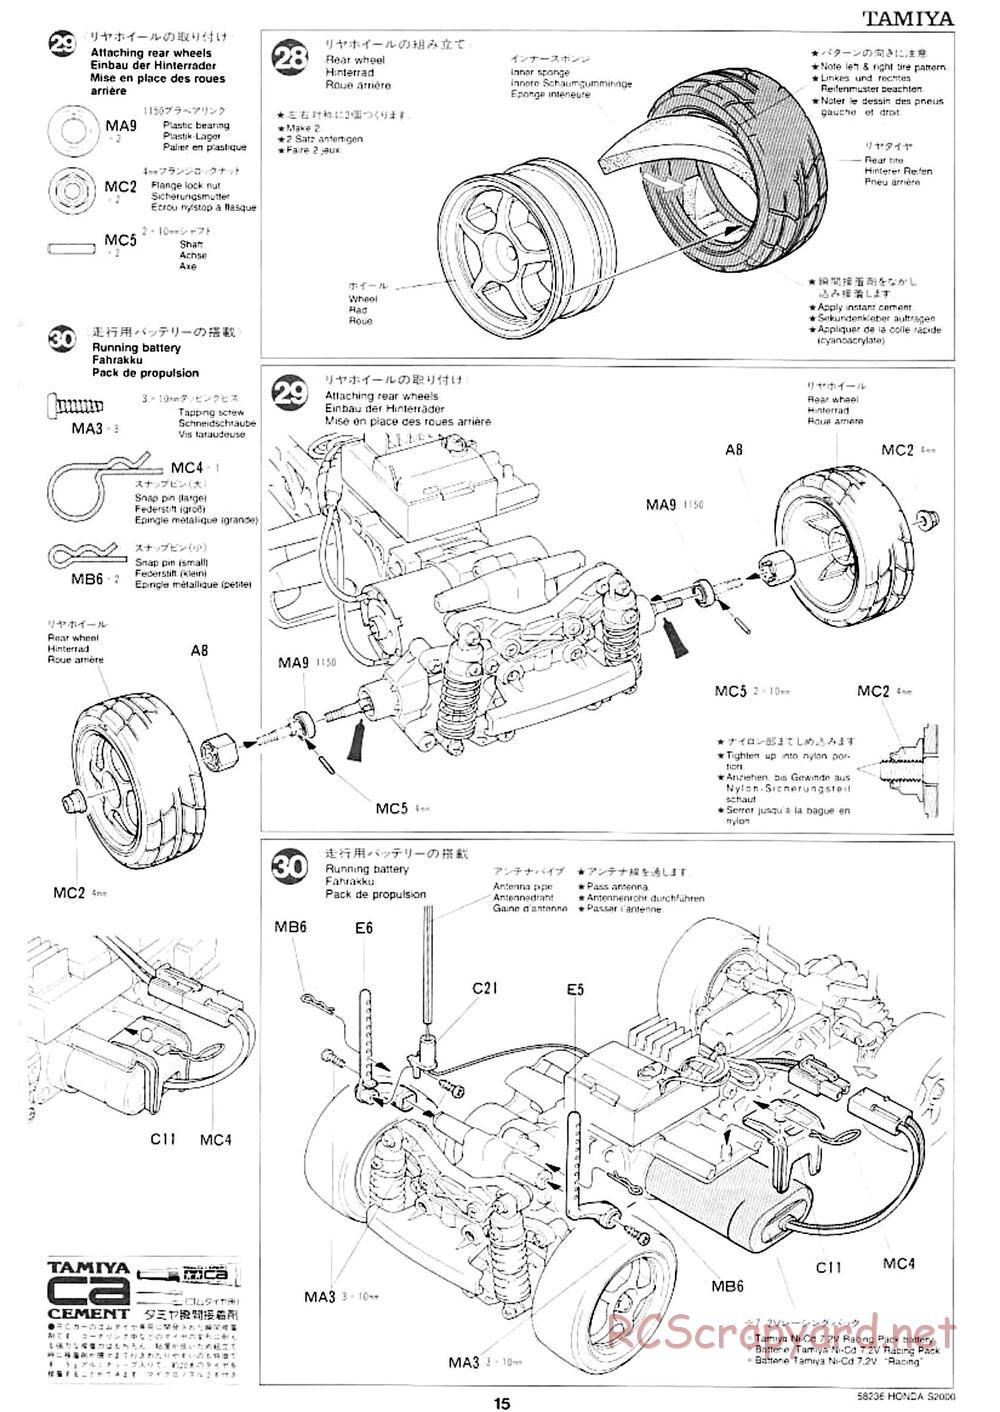 Tamiya - Honda S2000 - M04L Chassis - Manual - Page 13